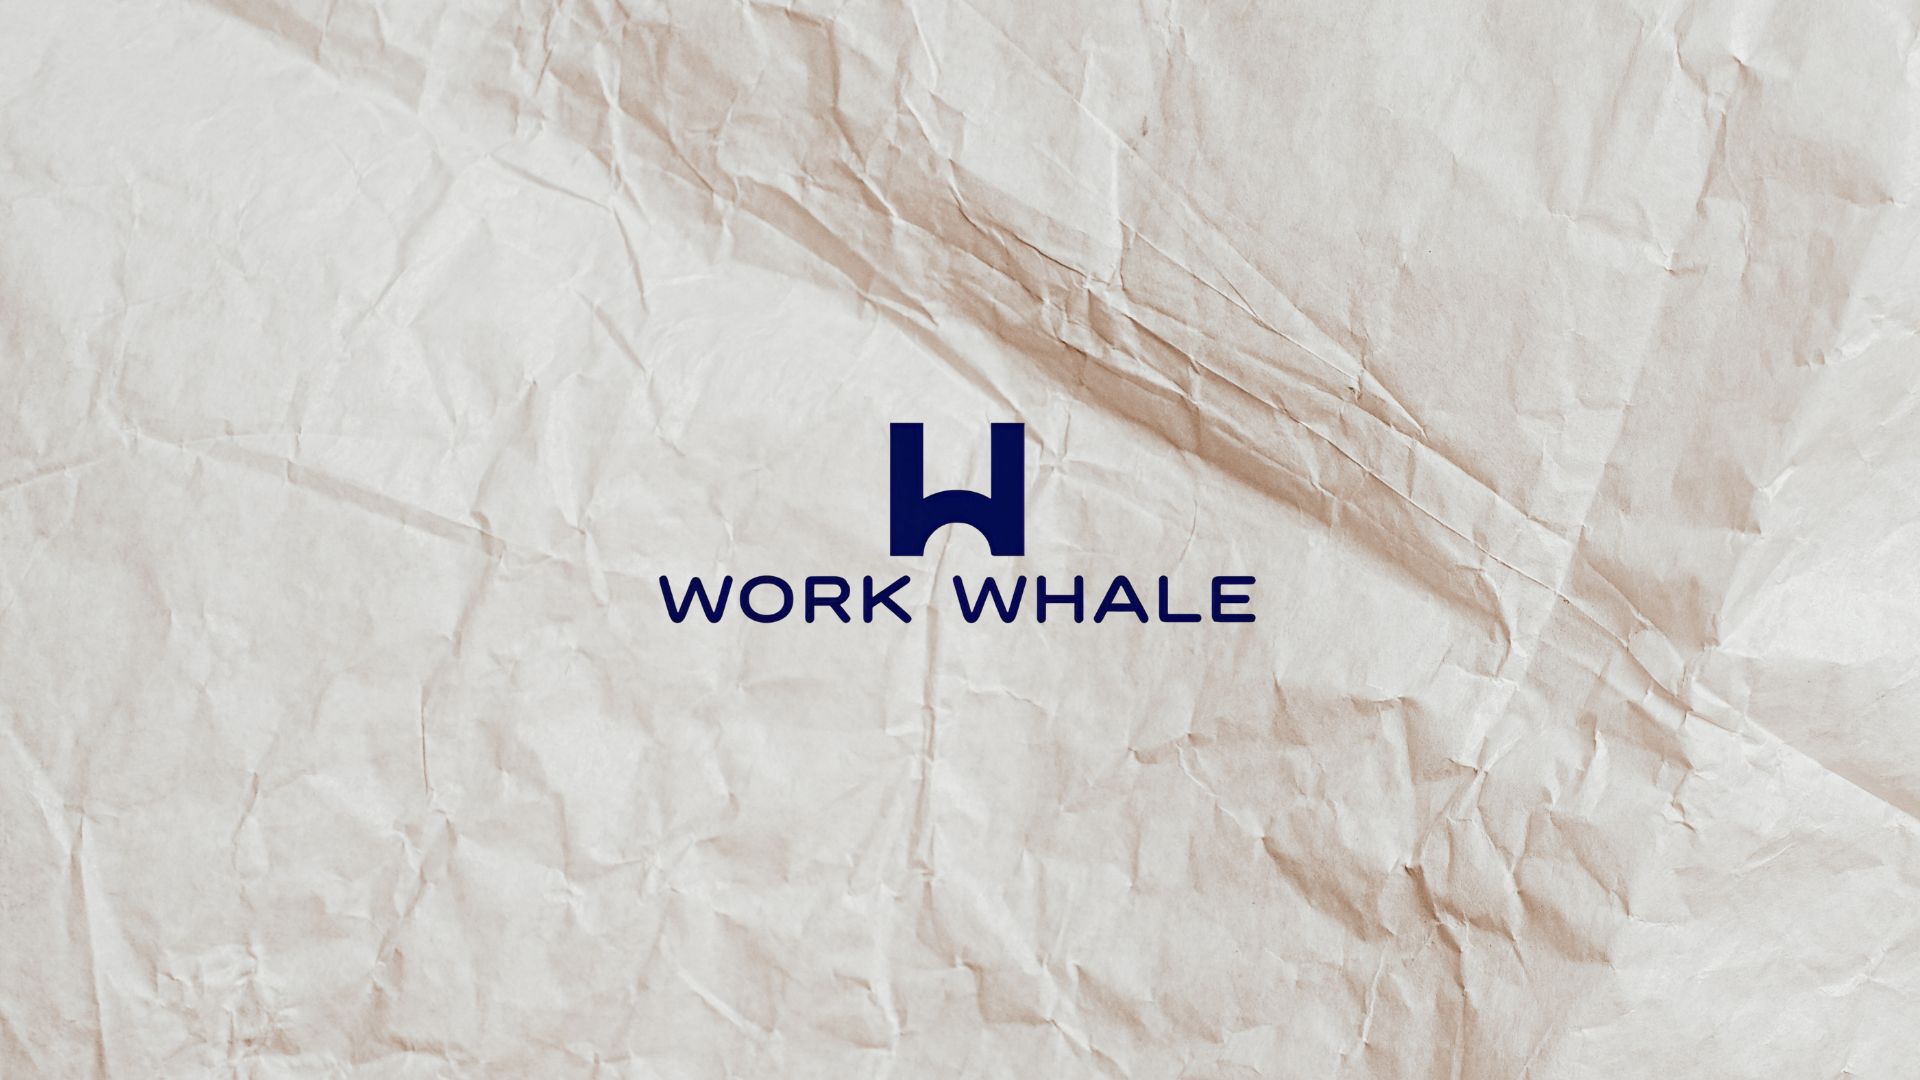 Tìm Việc An Toàn Tại Job Board Platform Work Whale